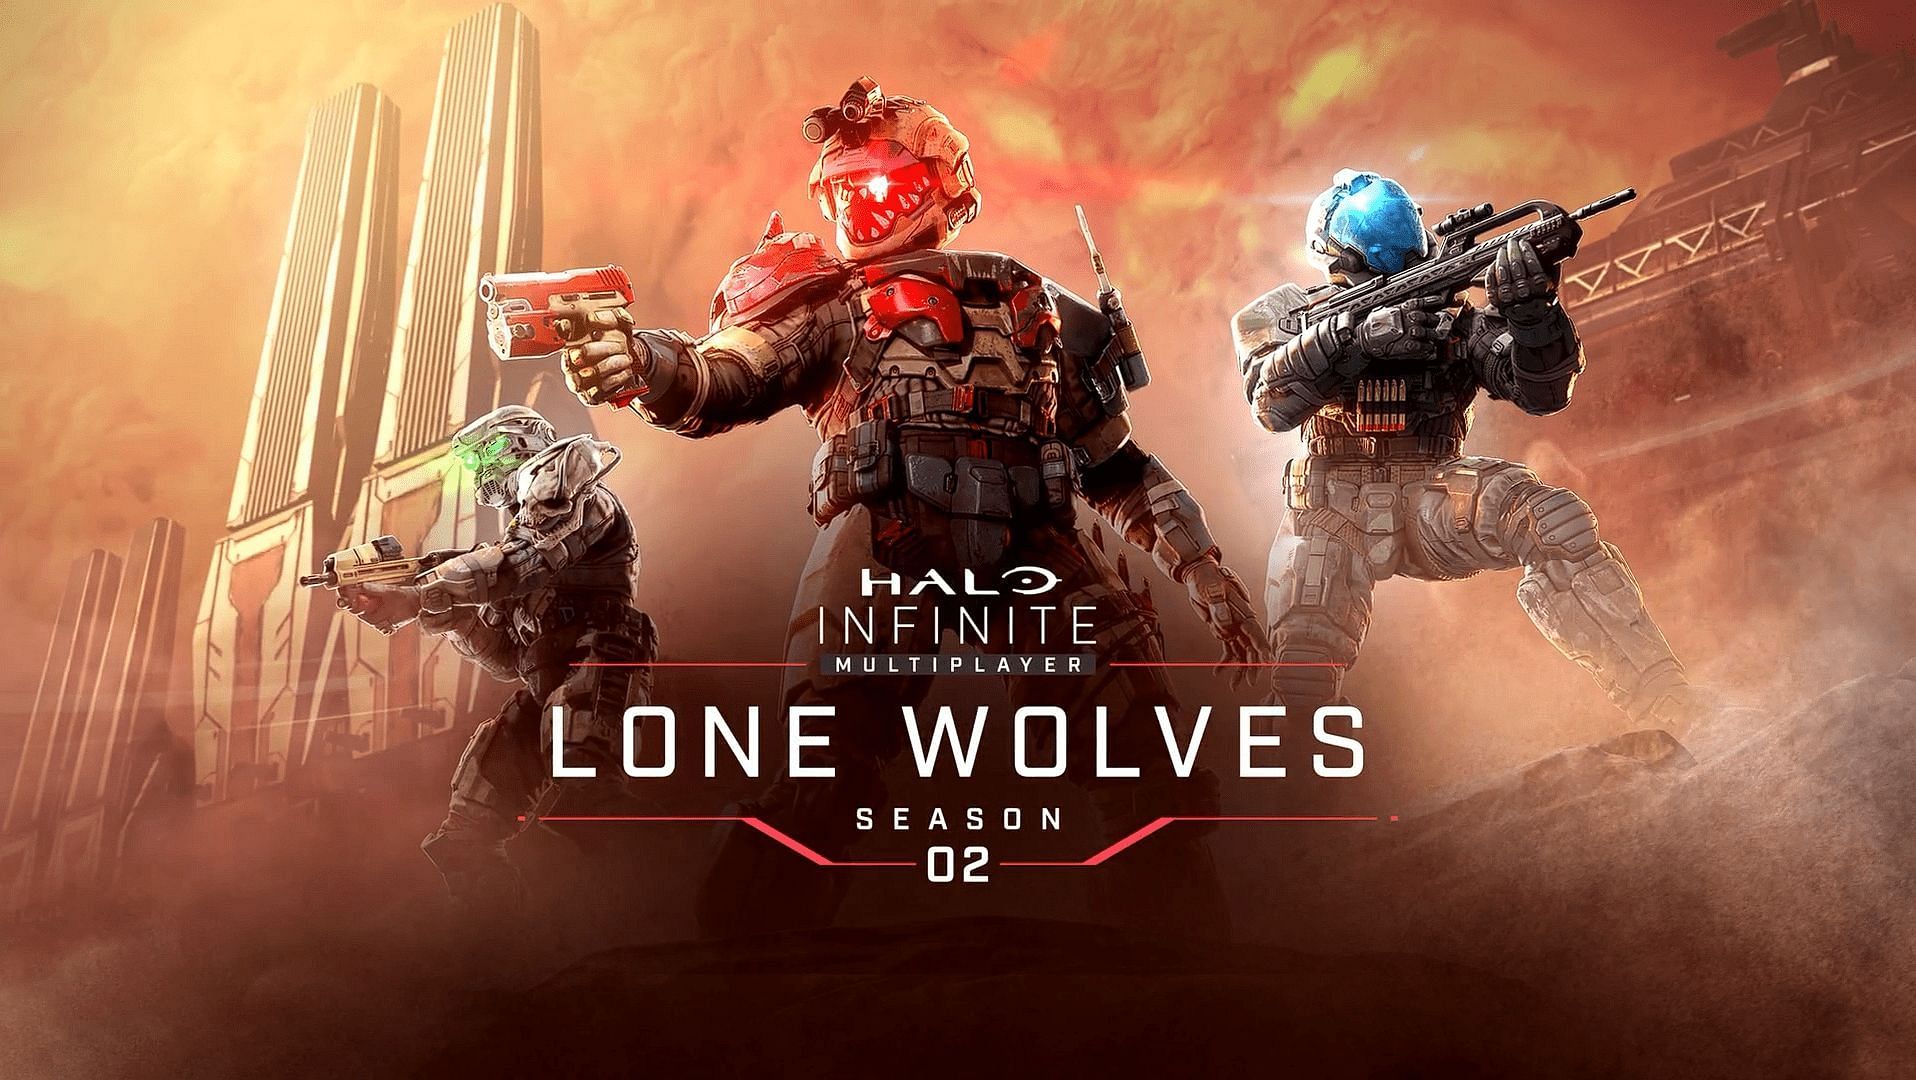 O imagine promoțională pentru Halo Infinite Sezonul 2: Lone Wolves (Imagine prin 343 Industries)